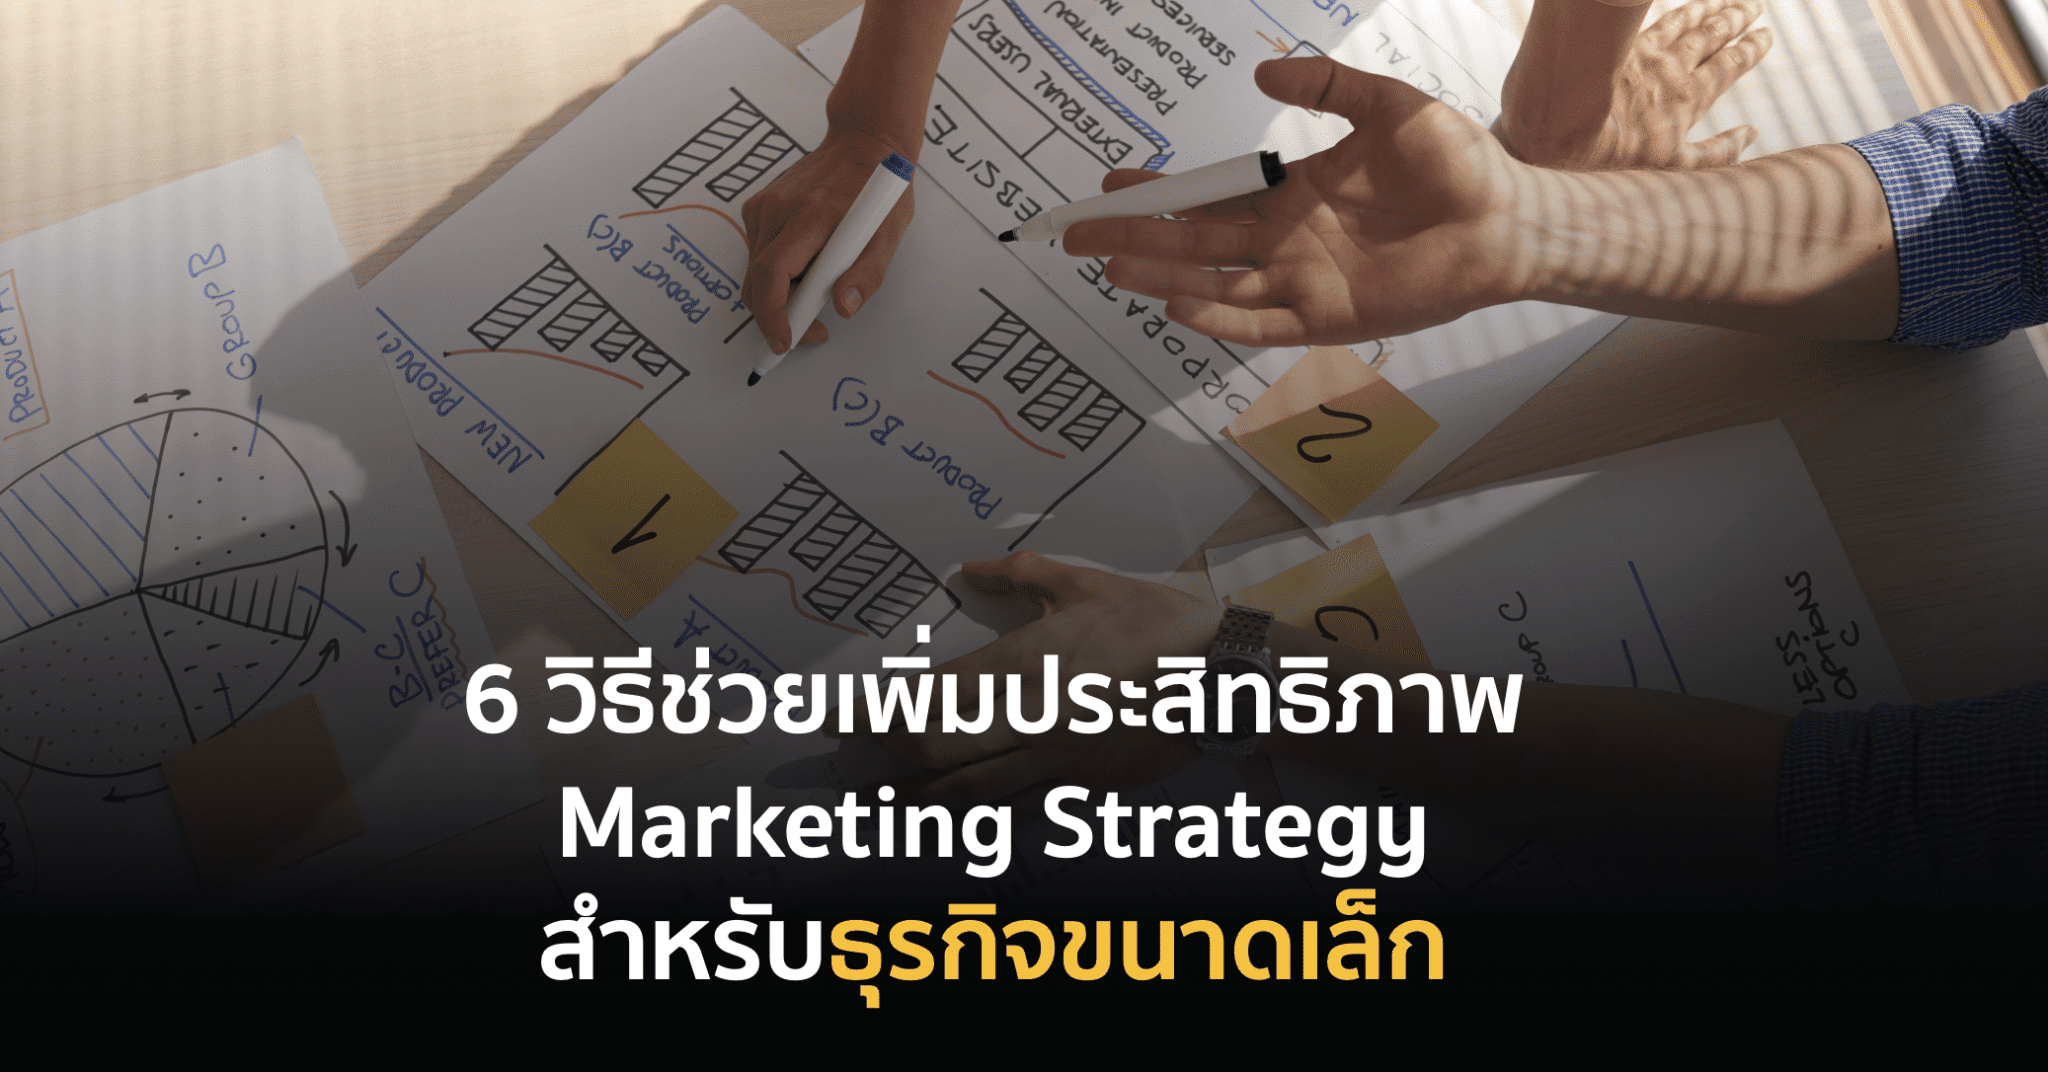 6 วิธีช่วยเพิ่มประสิทธิภาพให้ Marketing Strategy สำหรับธุรกิจขนาดเล็ก